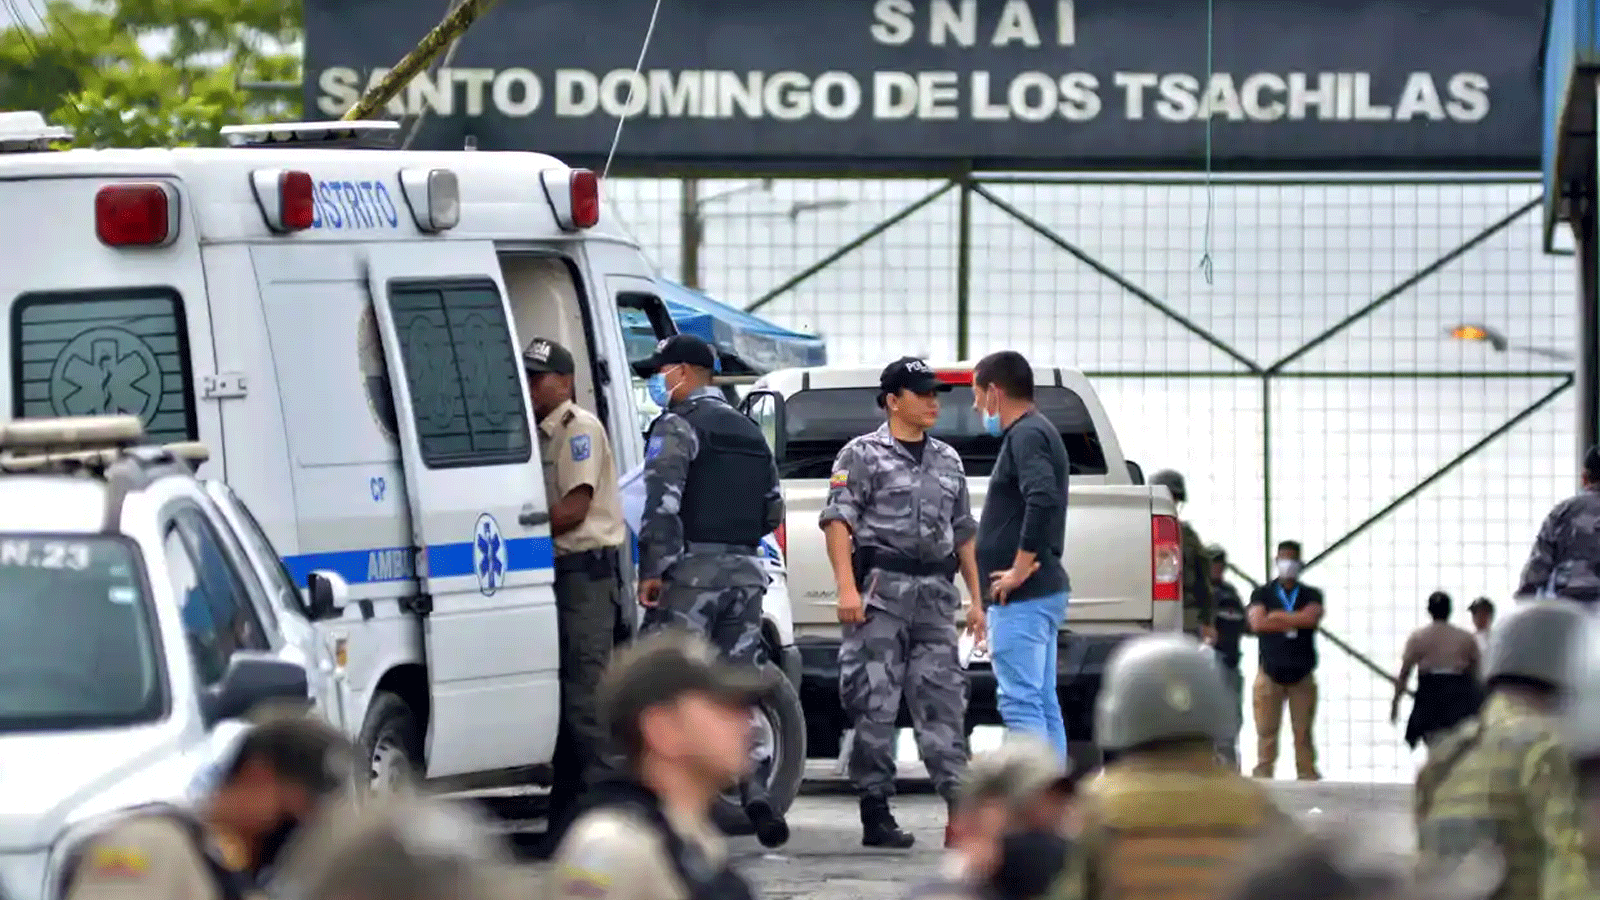 منظر خارج سجن بيلافيستا بعد أعمال شغب، في سانتو دومينغو دي لوس تساتشيلاس، الإكوادور ، يوم الاثنين